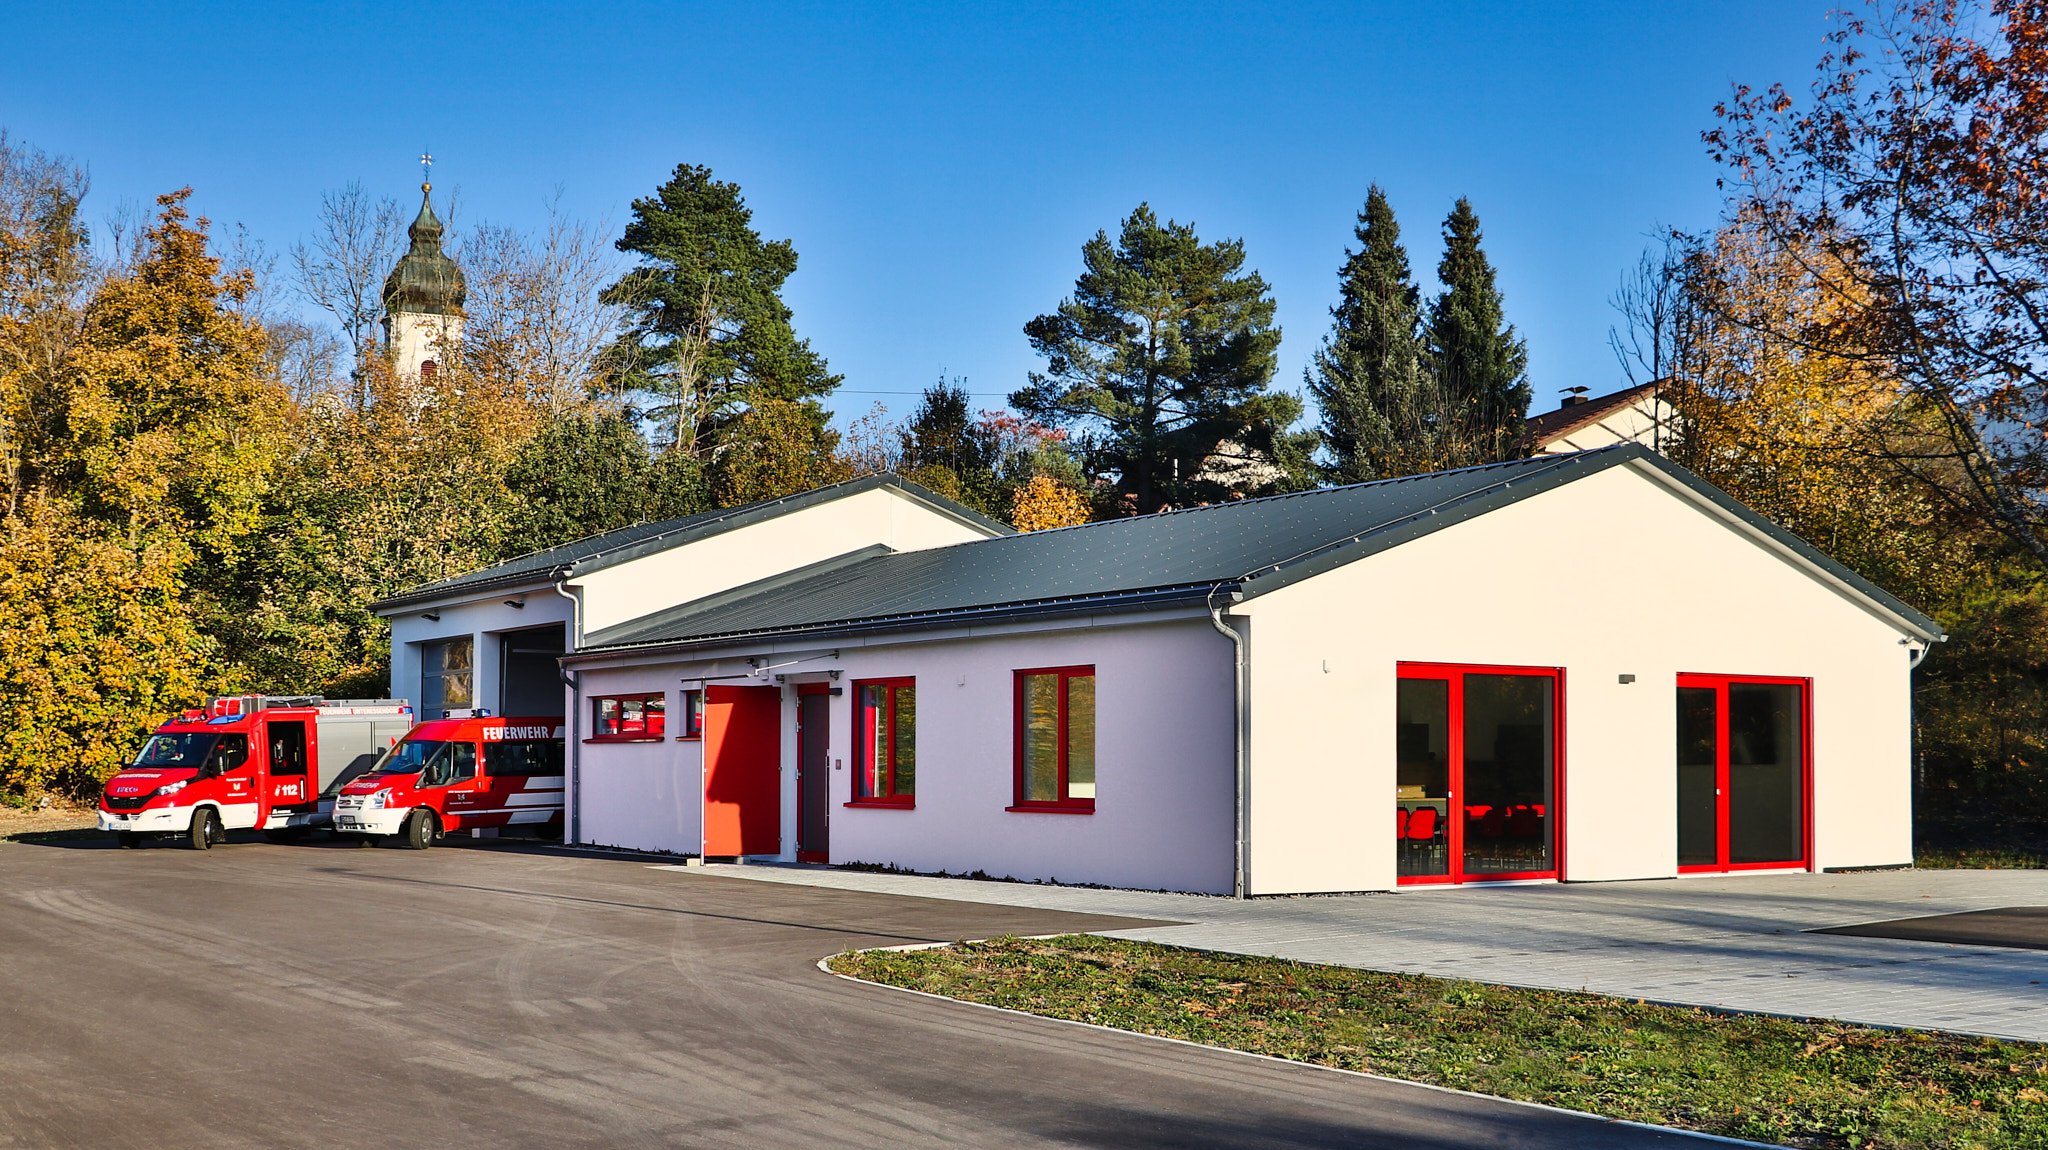 Feuerwehrhaus Unteressendorf mit zwei roten Feuerwehrfahrzeugen